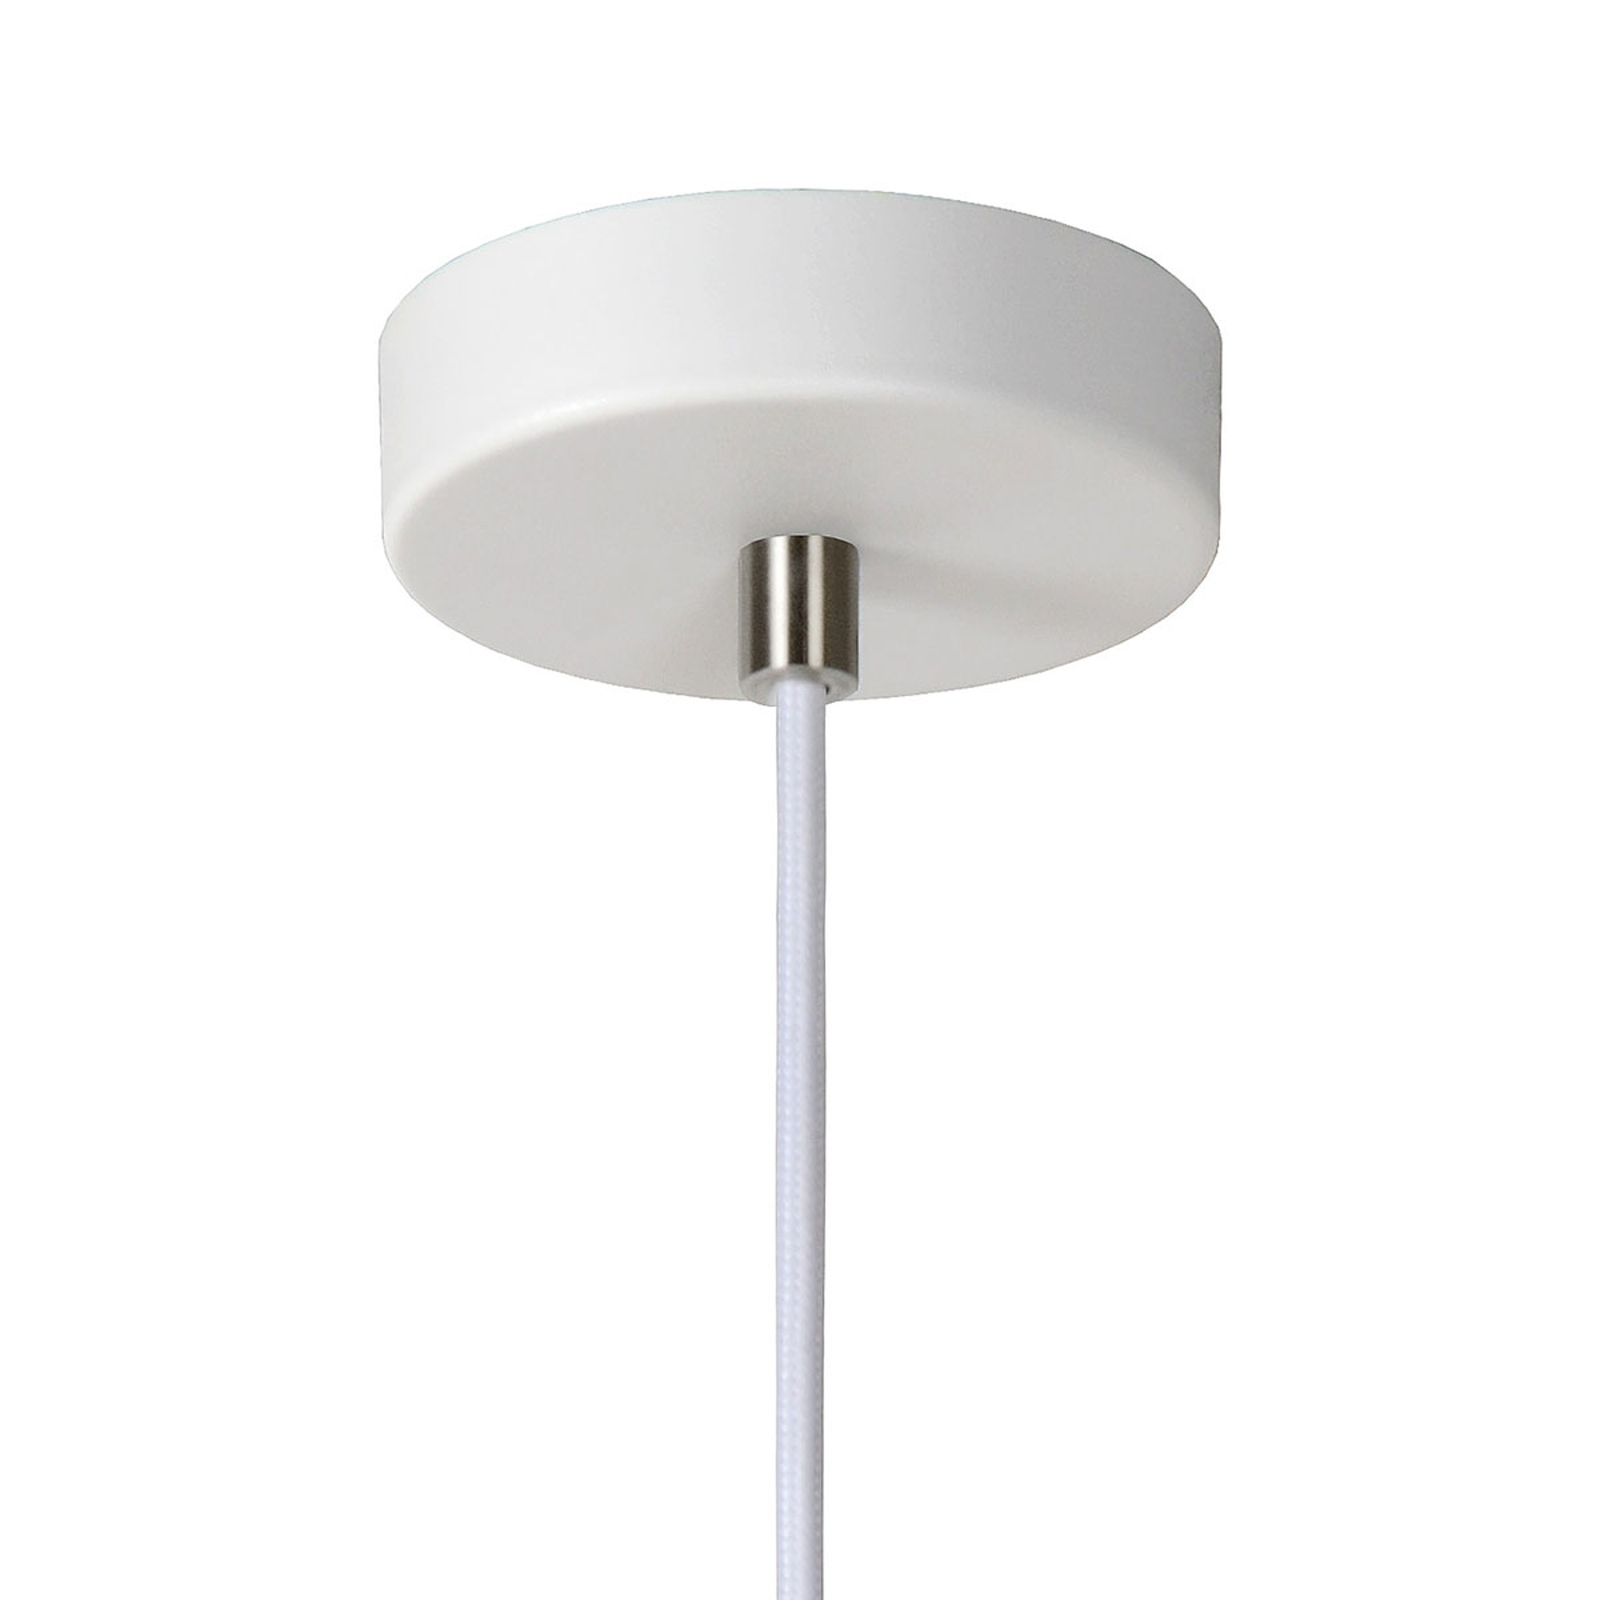 Gipsowa lampa wisząca Gipsy w kształcie stożka